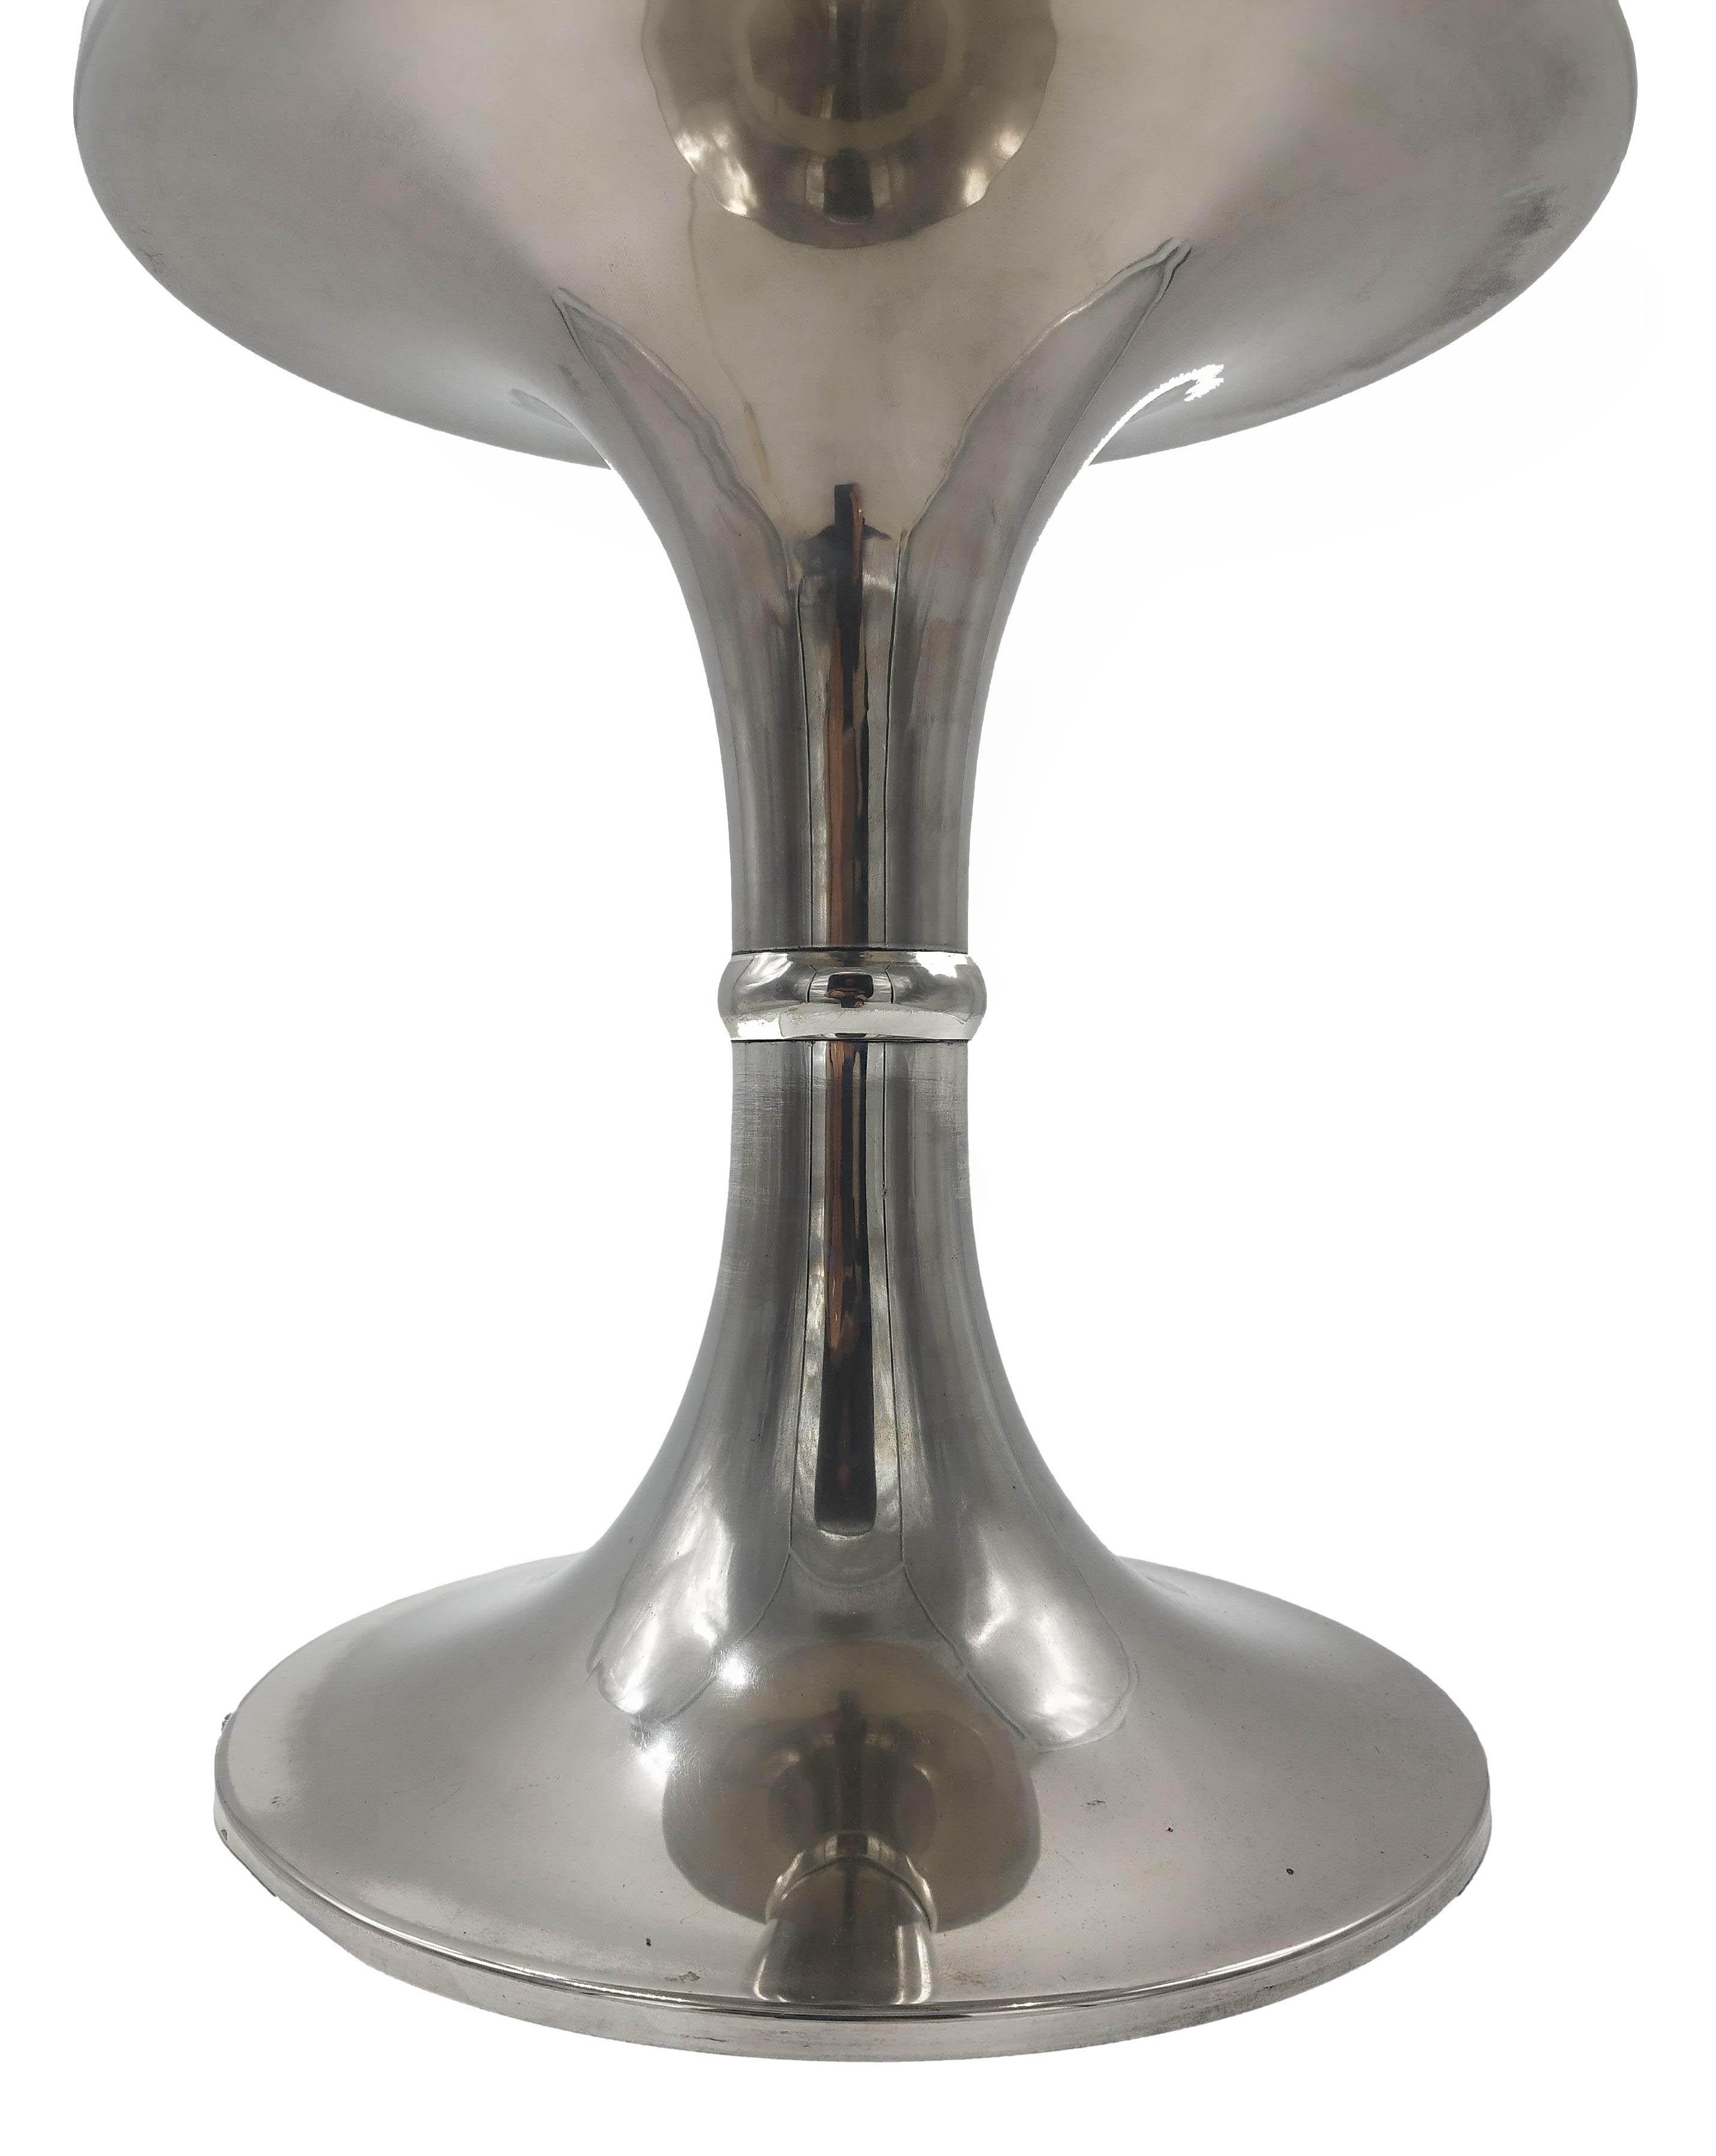 Magnifique lampe de table italienne des années 1970, base en sablier en métal argenté et abat-jour original en plexiglas ivoire avec profils en métal argenté.